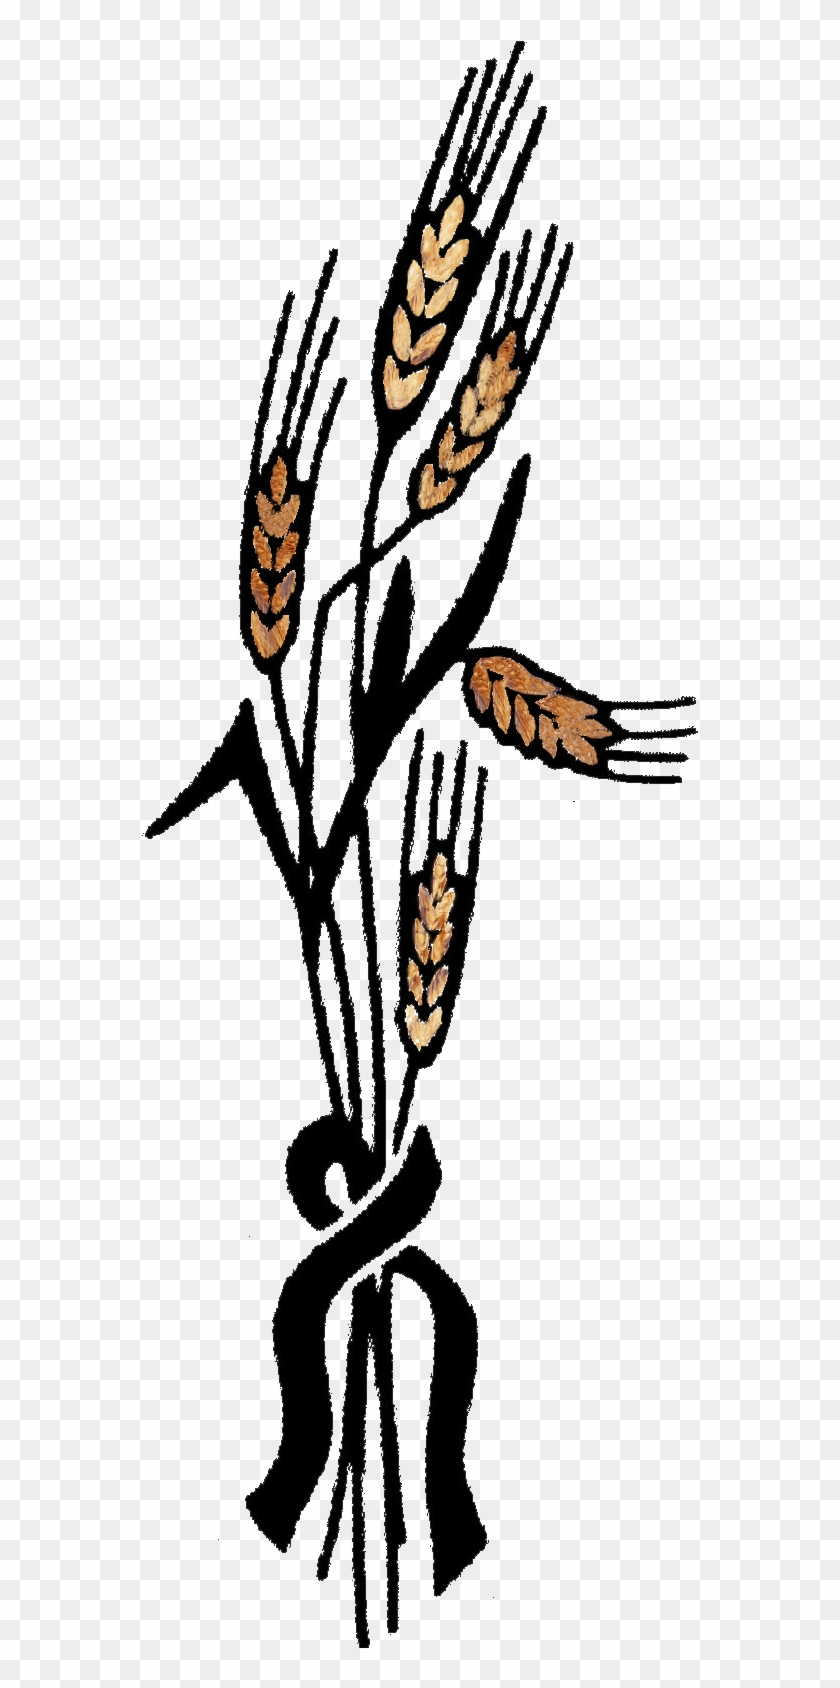 Sharing The Story Holodomor Awareness Enewsletter Volume - Holodomor Wheat #1075930